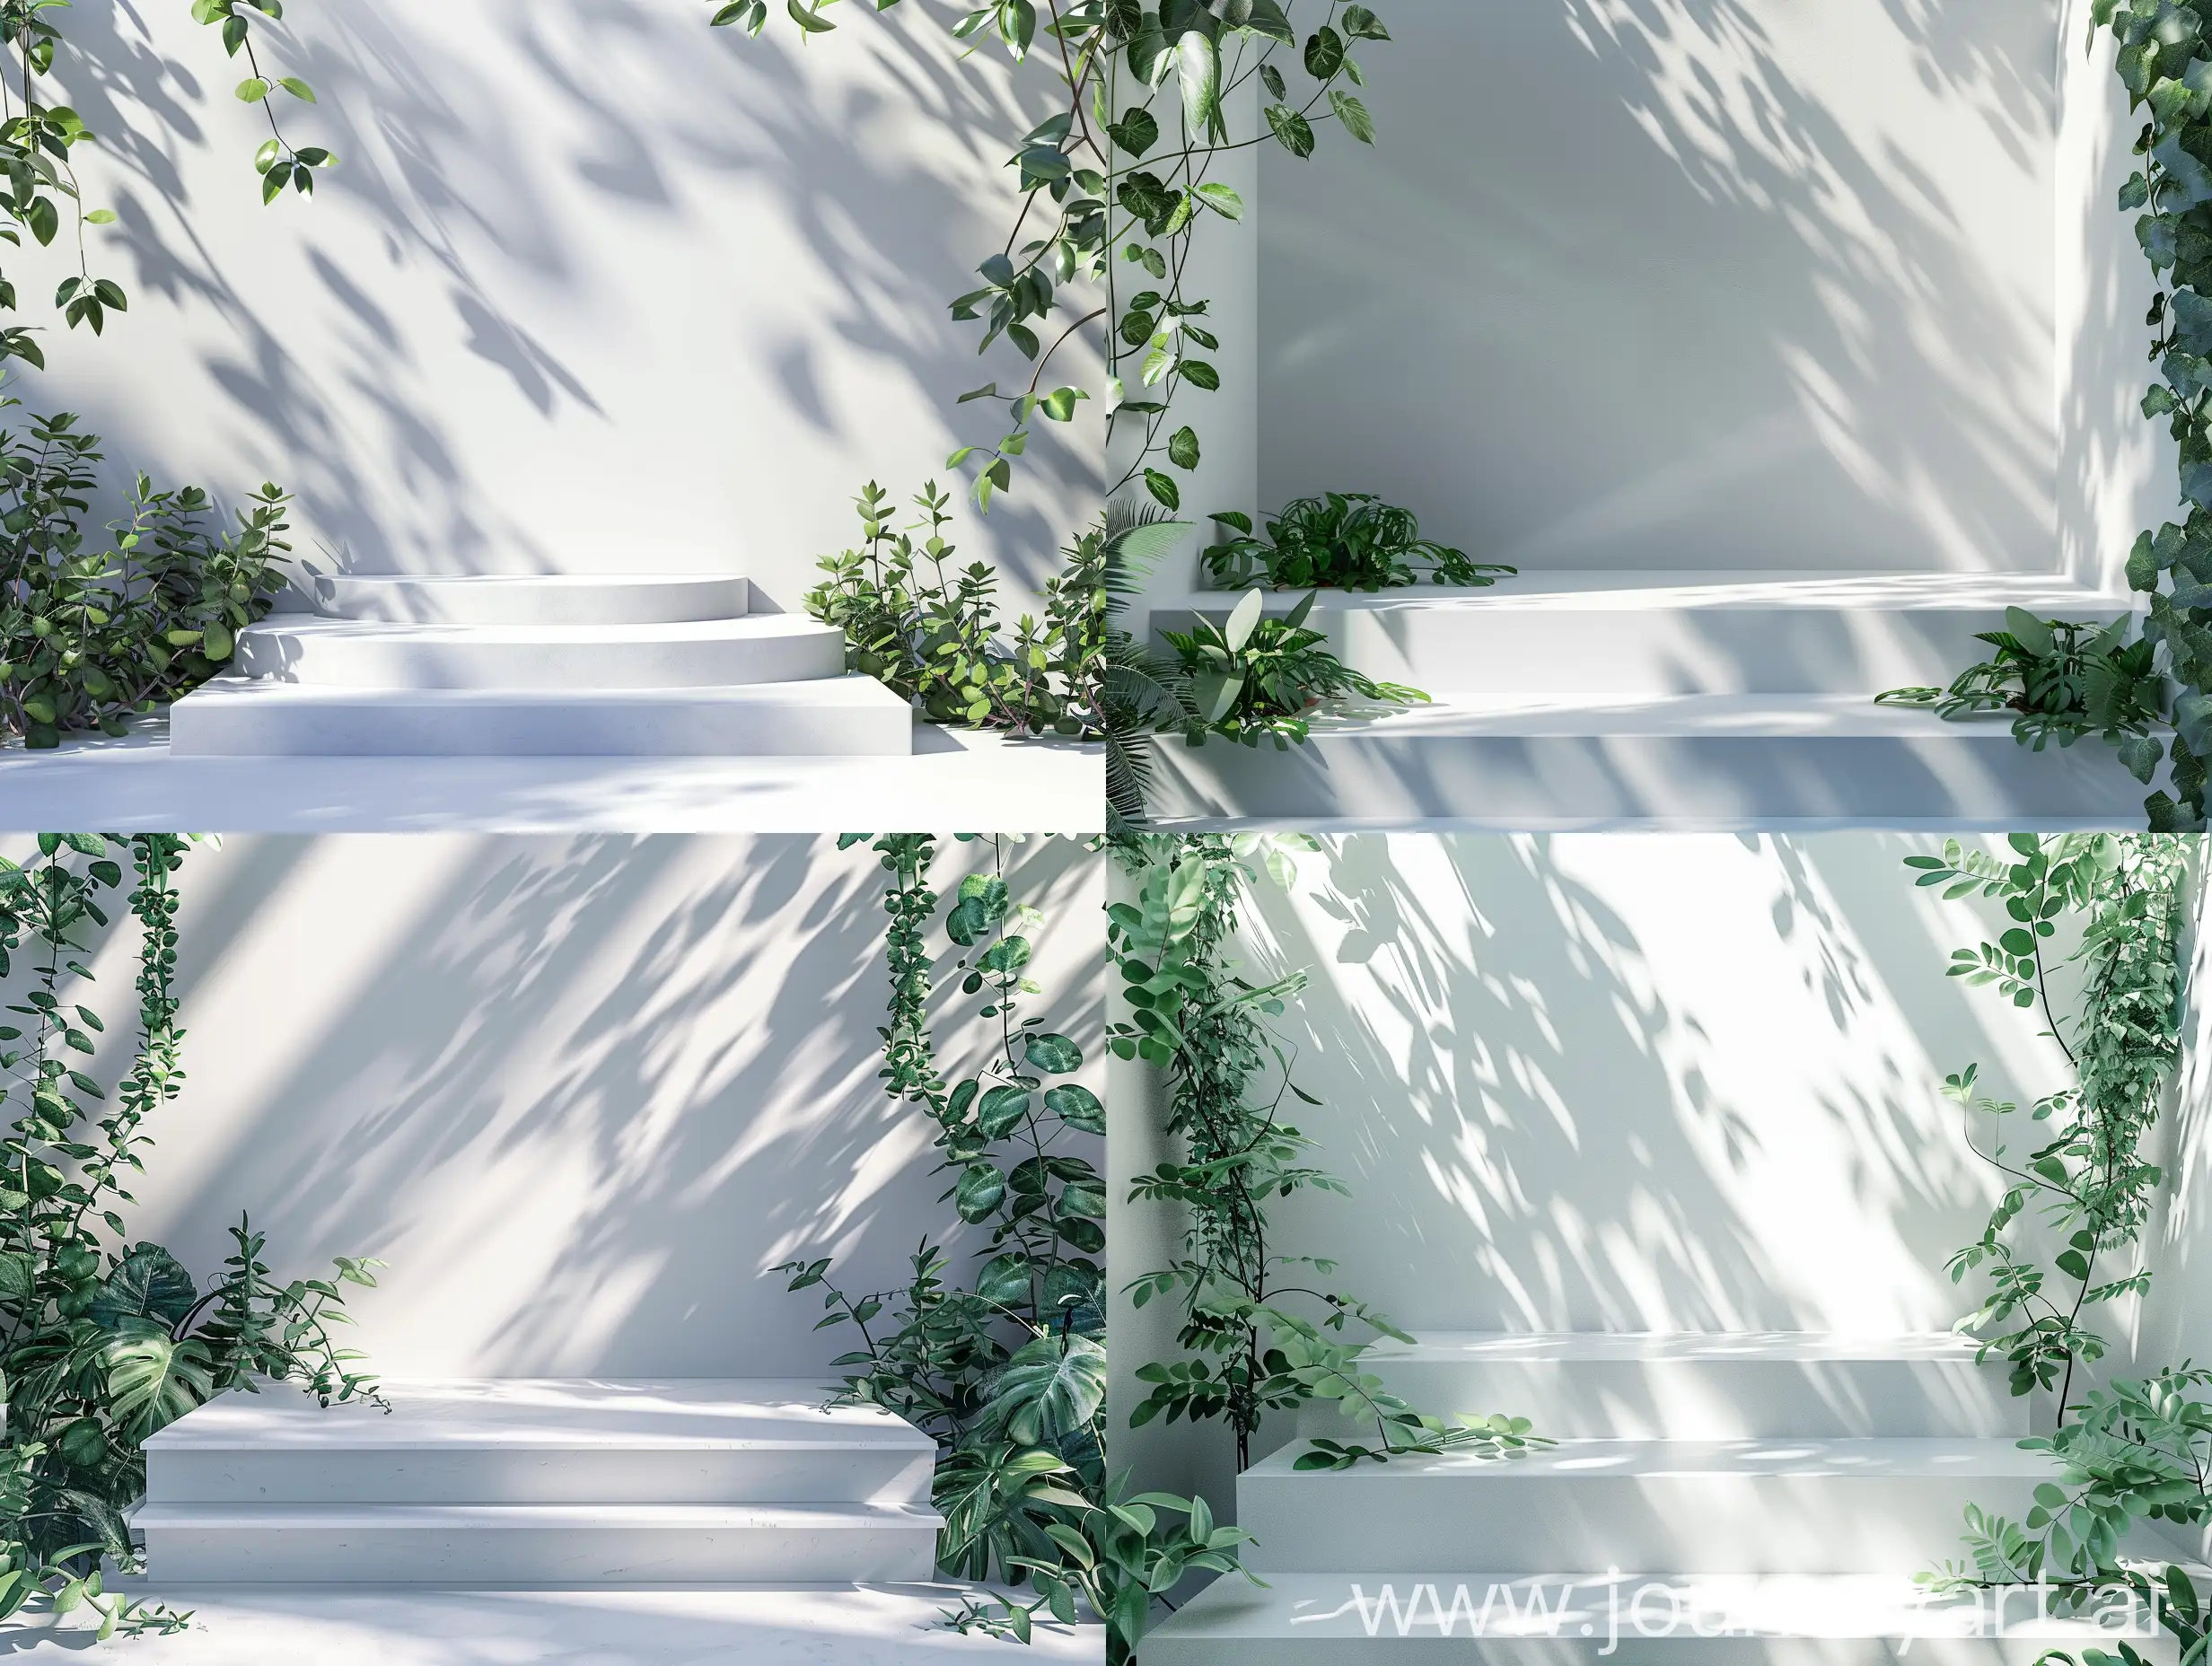 一个白色的分级展台，两边有绿色叶子的植物，展台上留有空白，墙面有植物的光影，